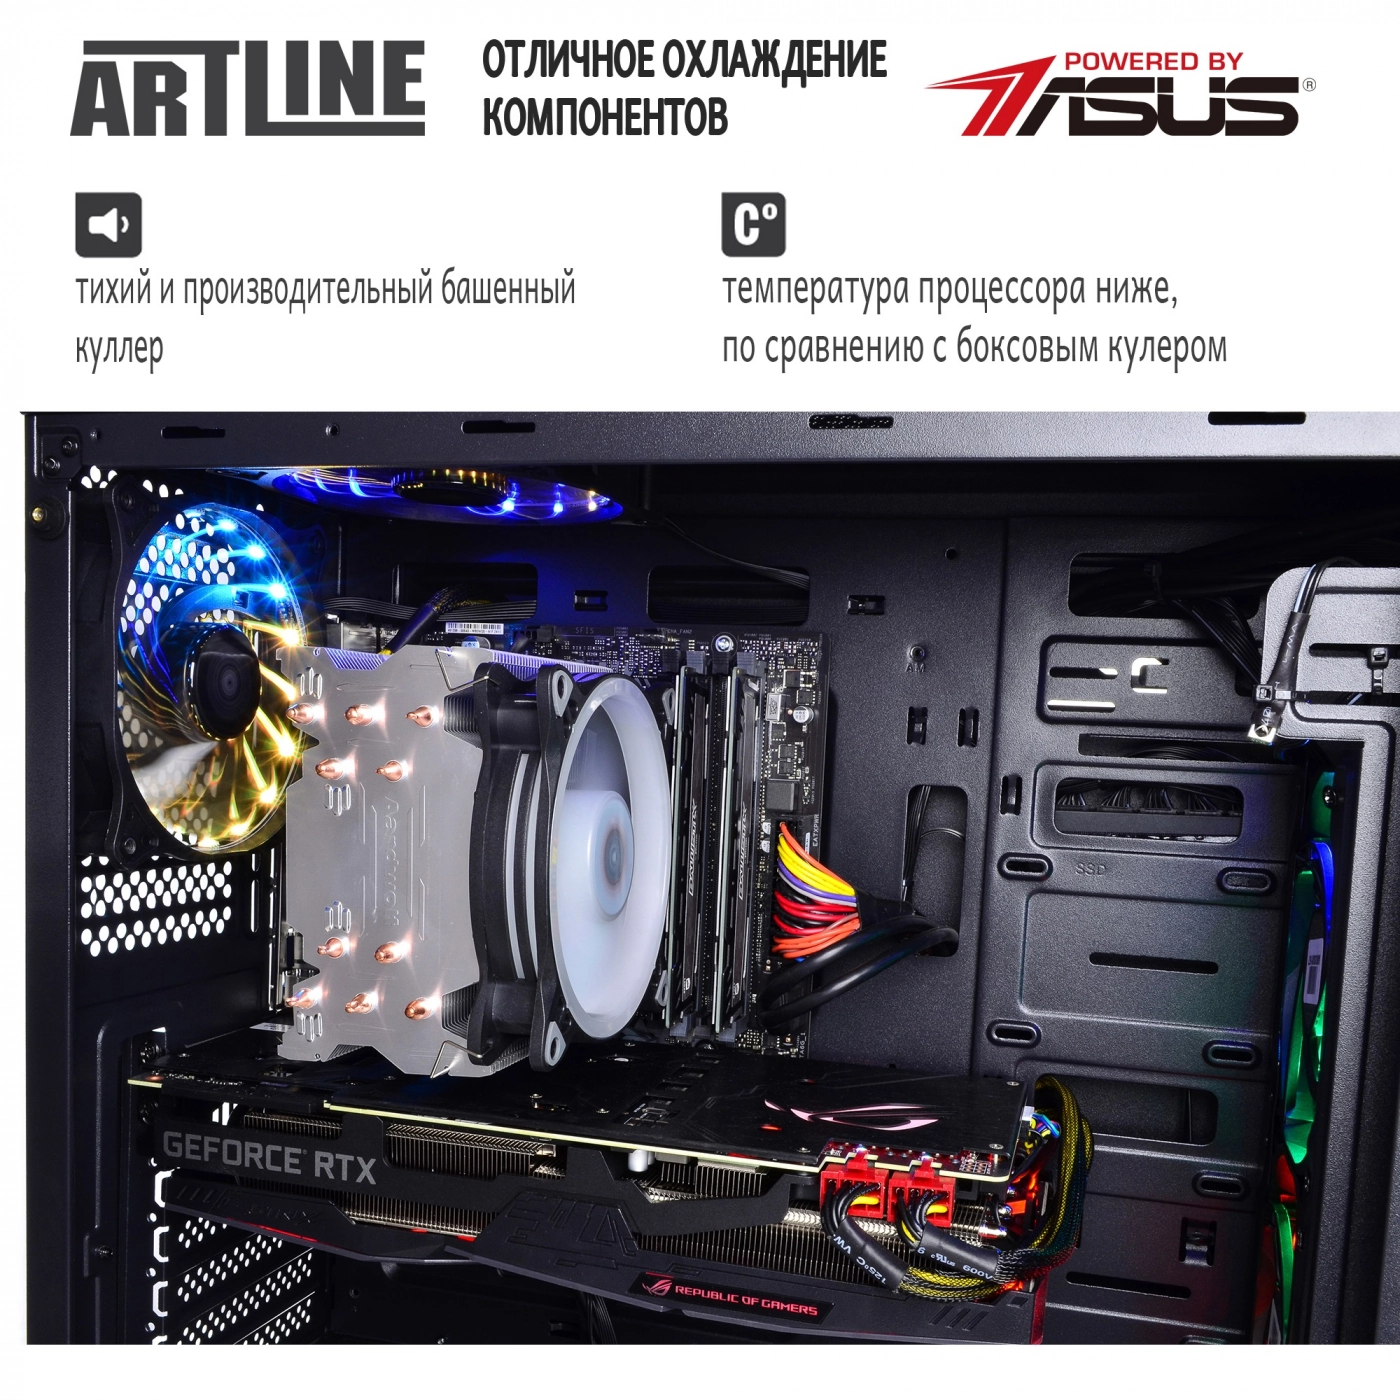 Купить Компьютер ARTLINE Gaming X99v23 - фото 5